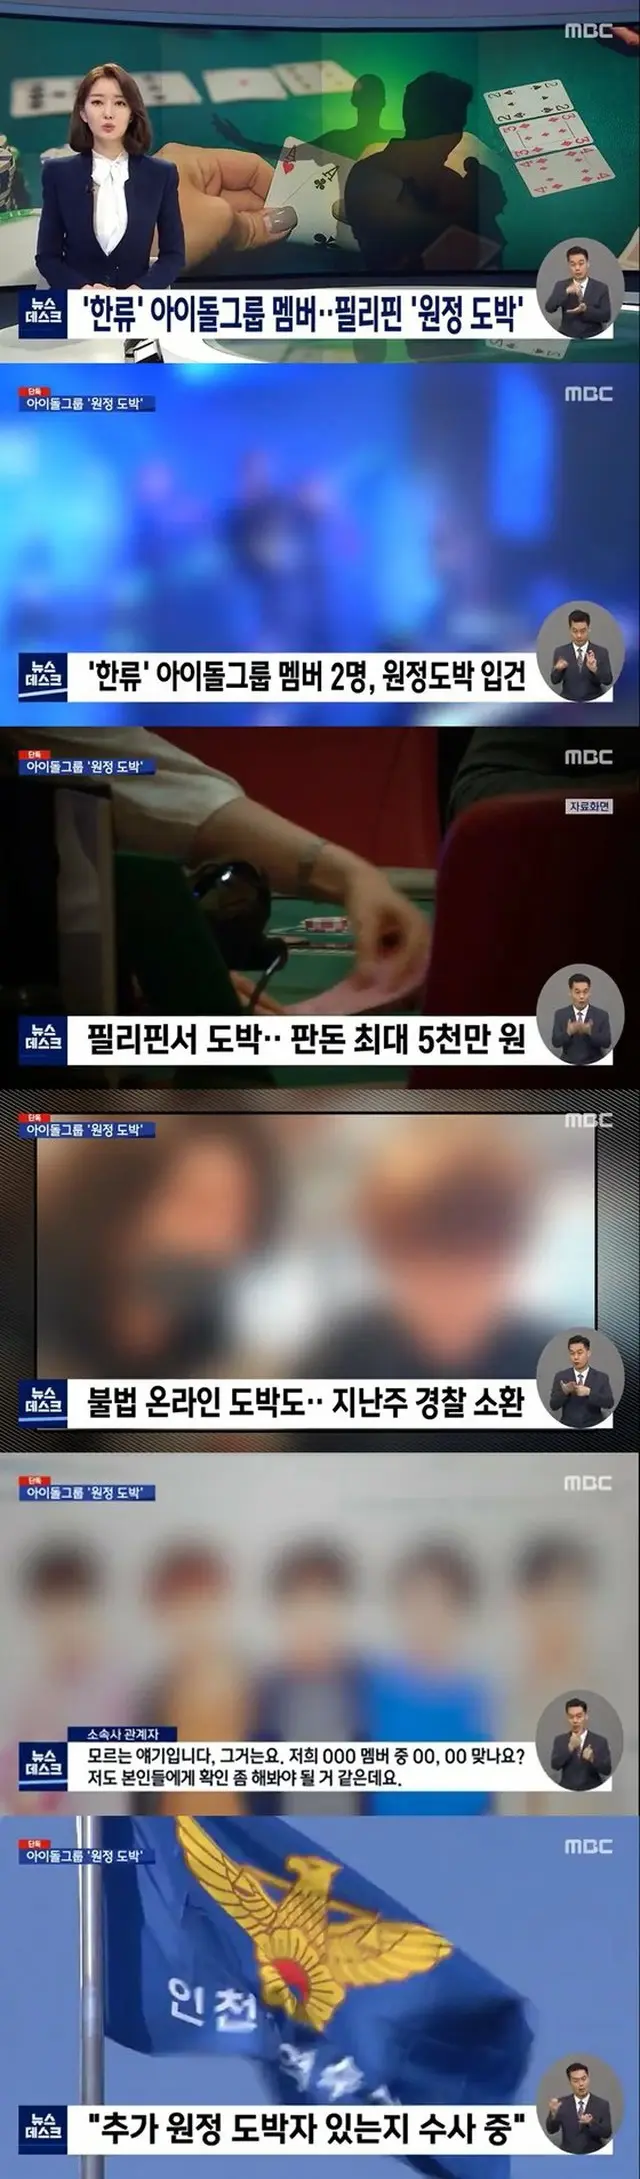 30代の有名アイドルメンバー2人、海外遠征賭博容疑で立件とMBCが報道…5000万ウォンに達する掛け金（画像提供:wowkorea）